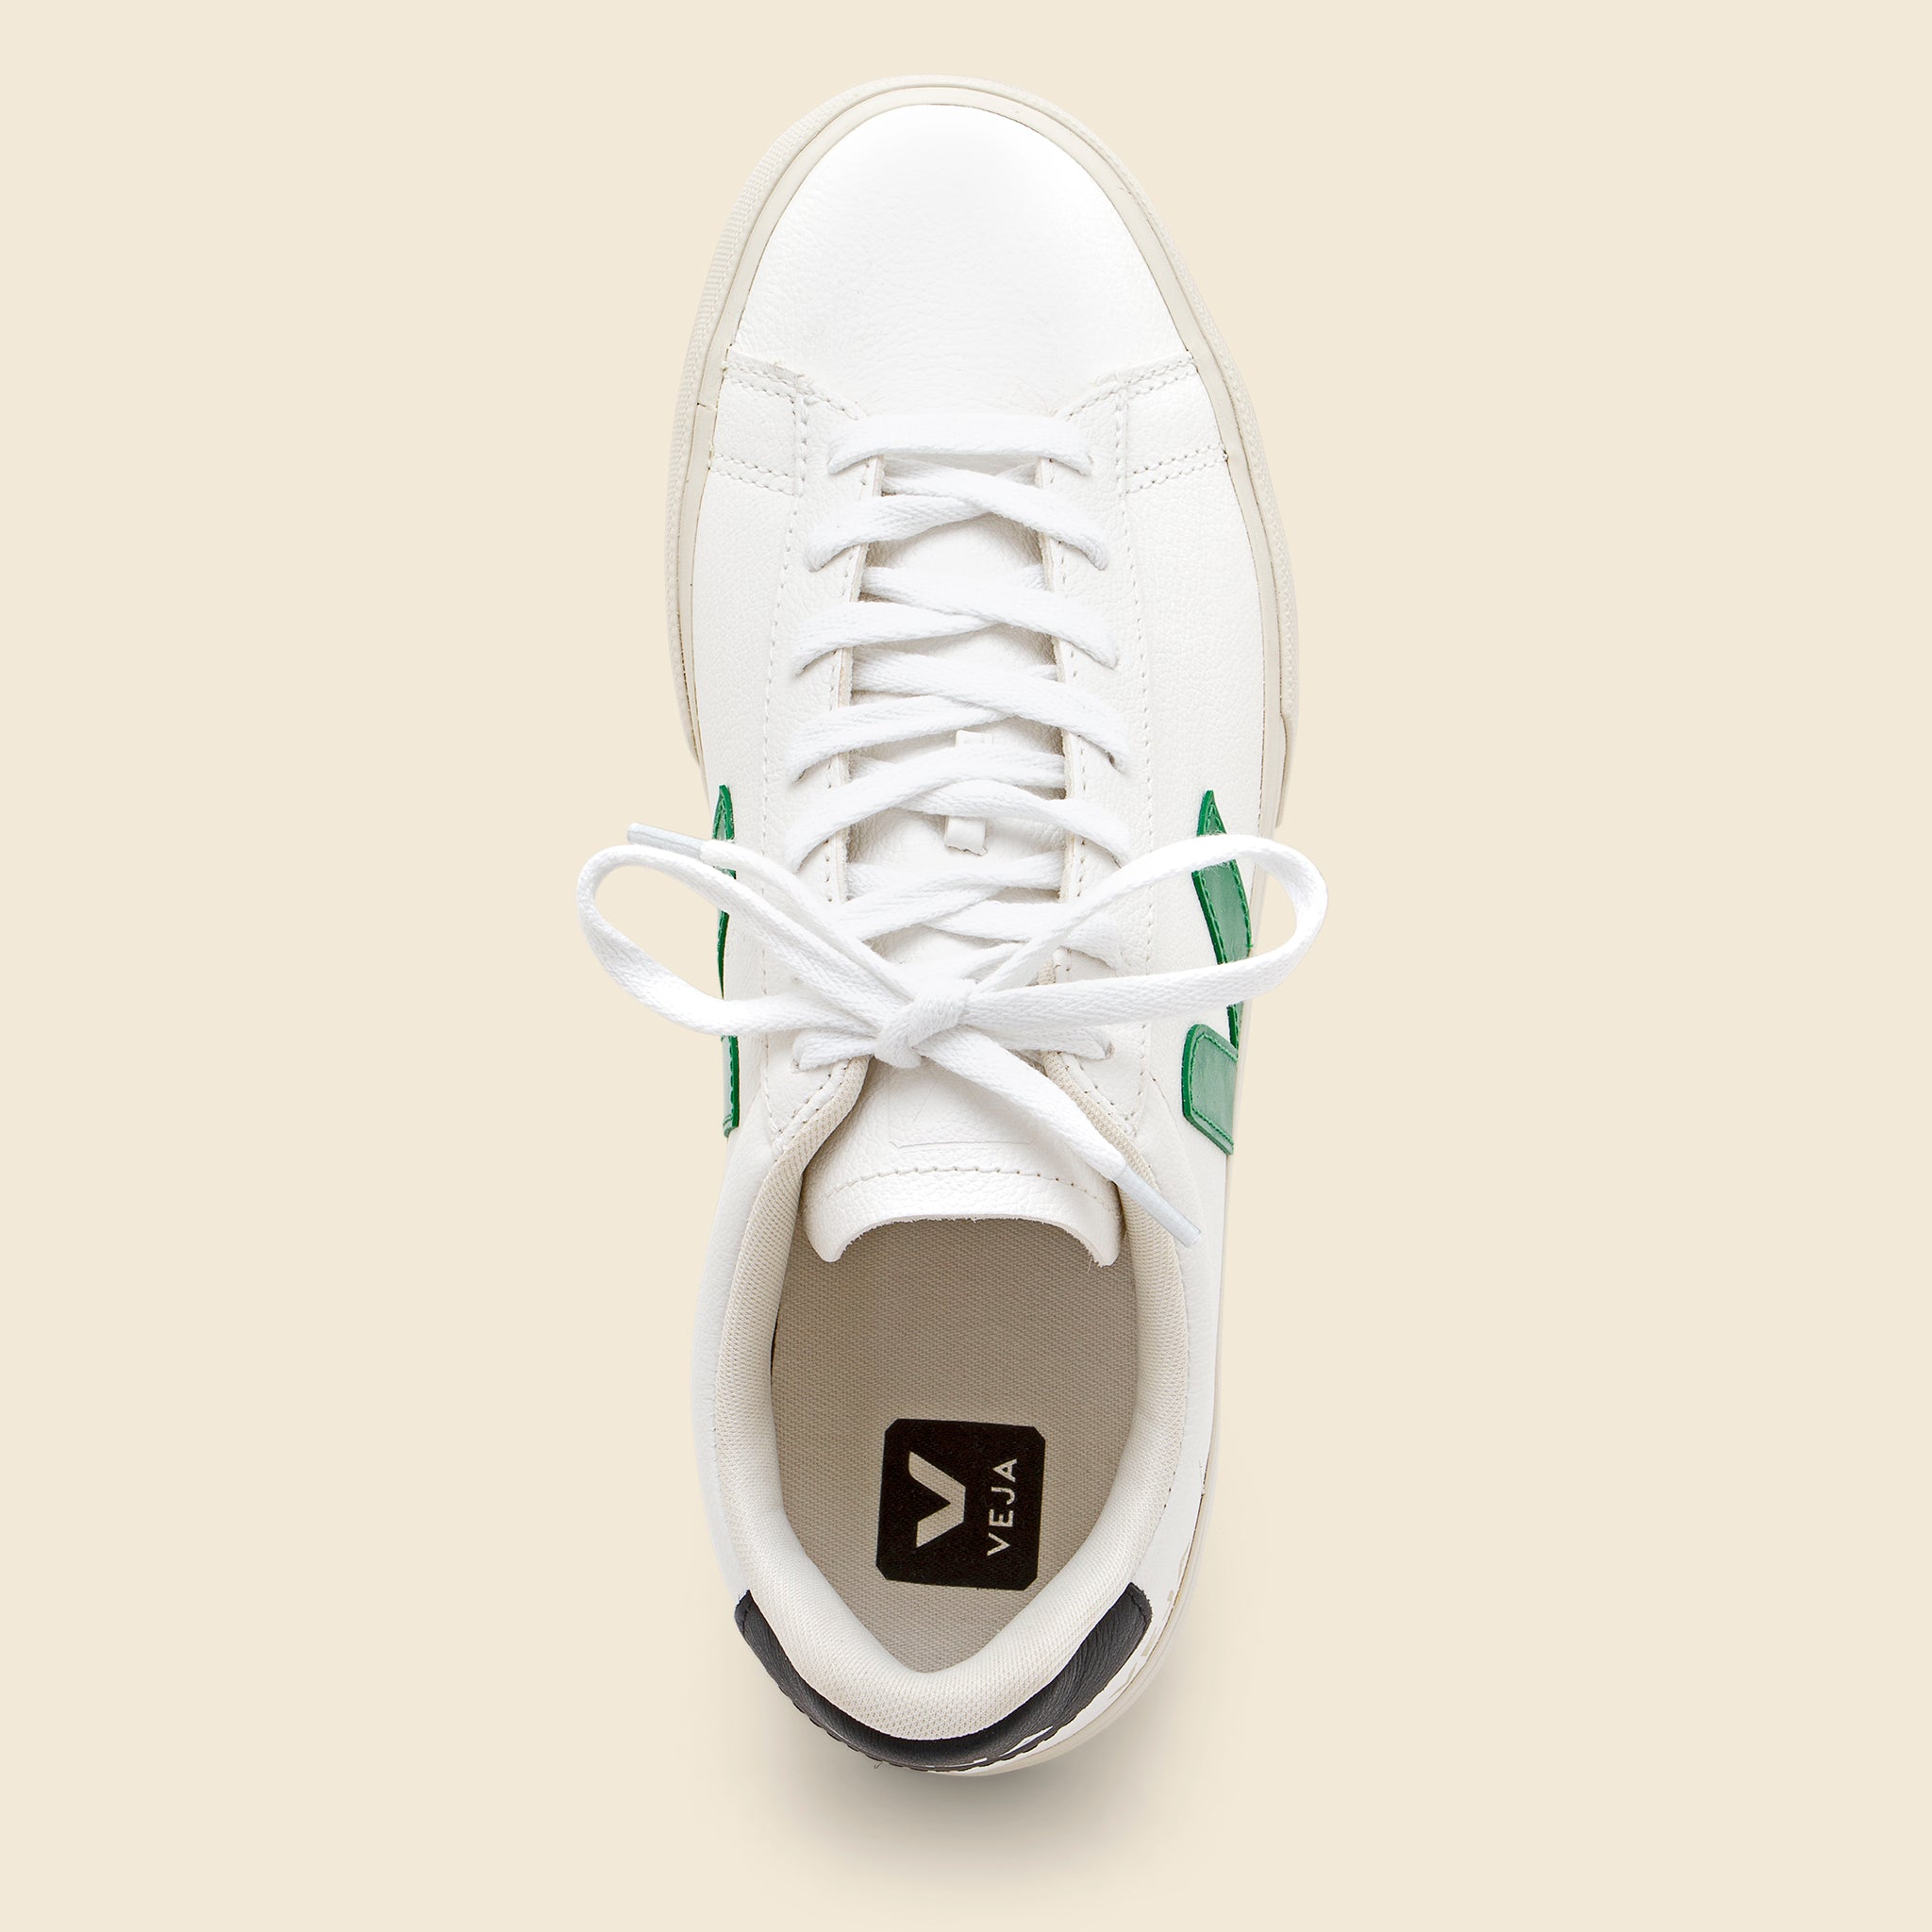 Veja, Campo Chrome Free Sneaker - Extra White/Emeruade/Black